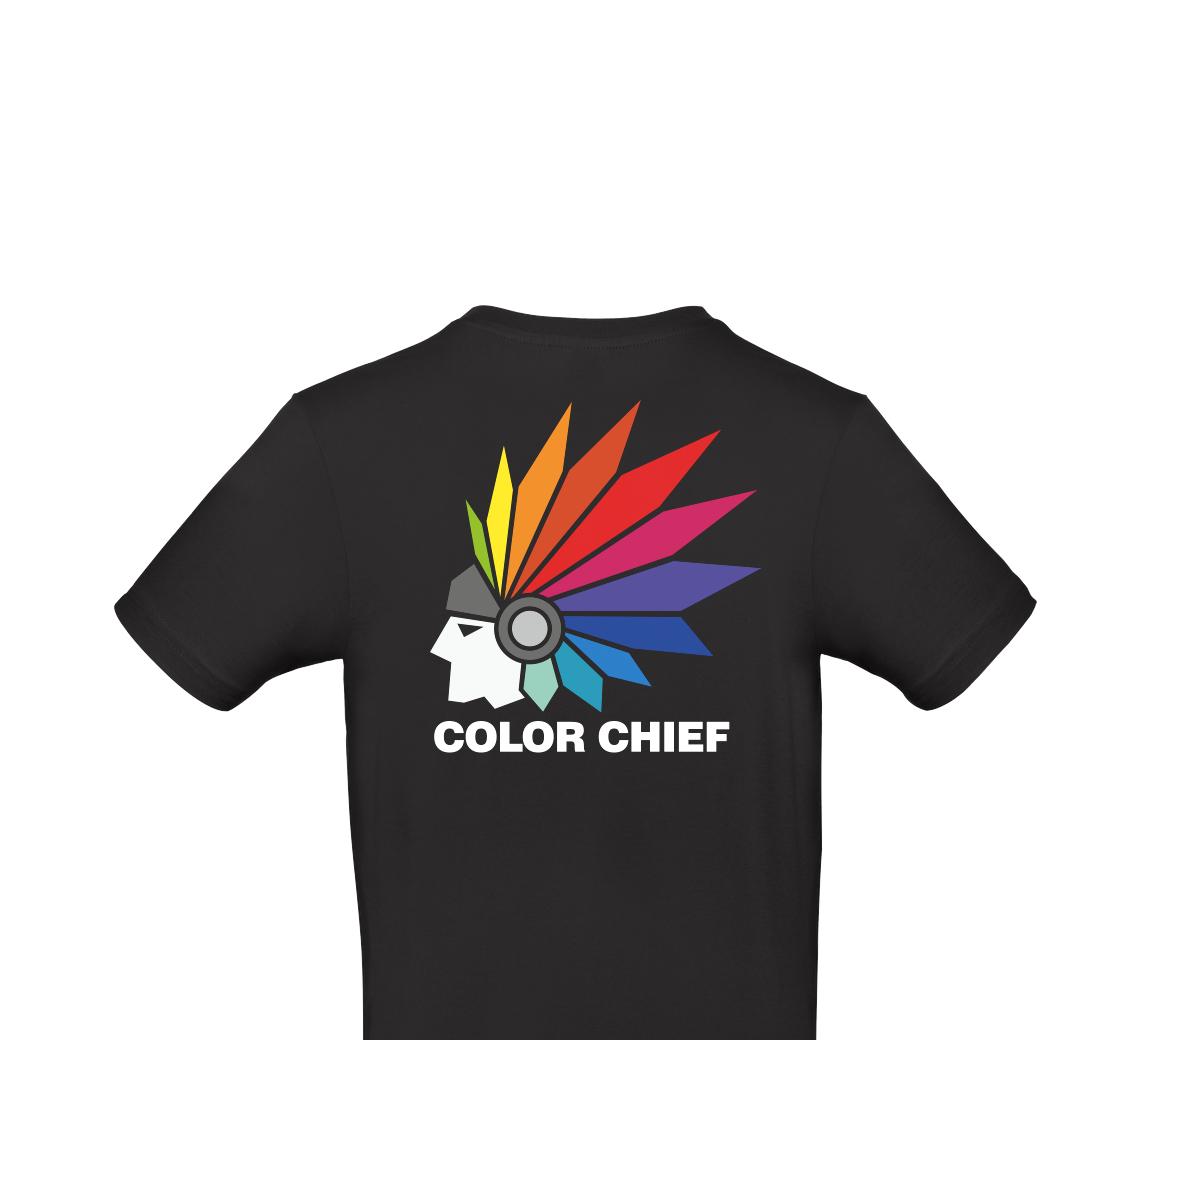 EUROLITE T-Shirt "Color Chief", L